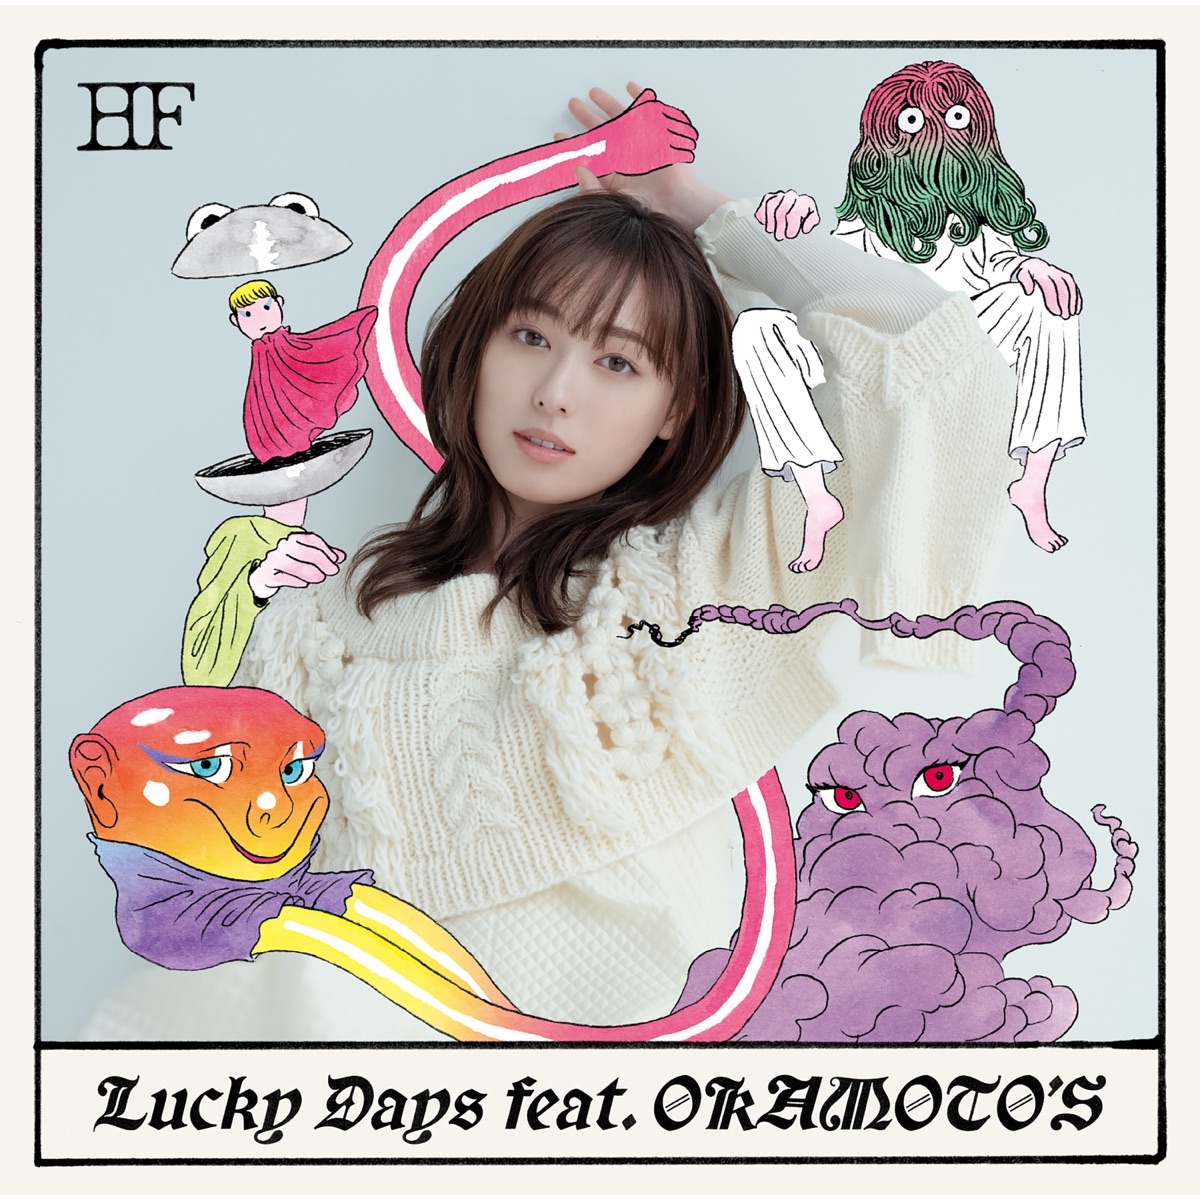 『福原遥 - 粉雪』収録の『Lucky Days feat. OKAMOTO'S』ジャケット